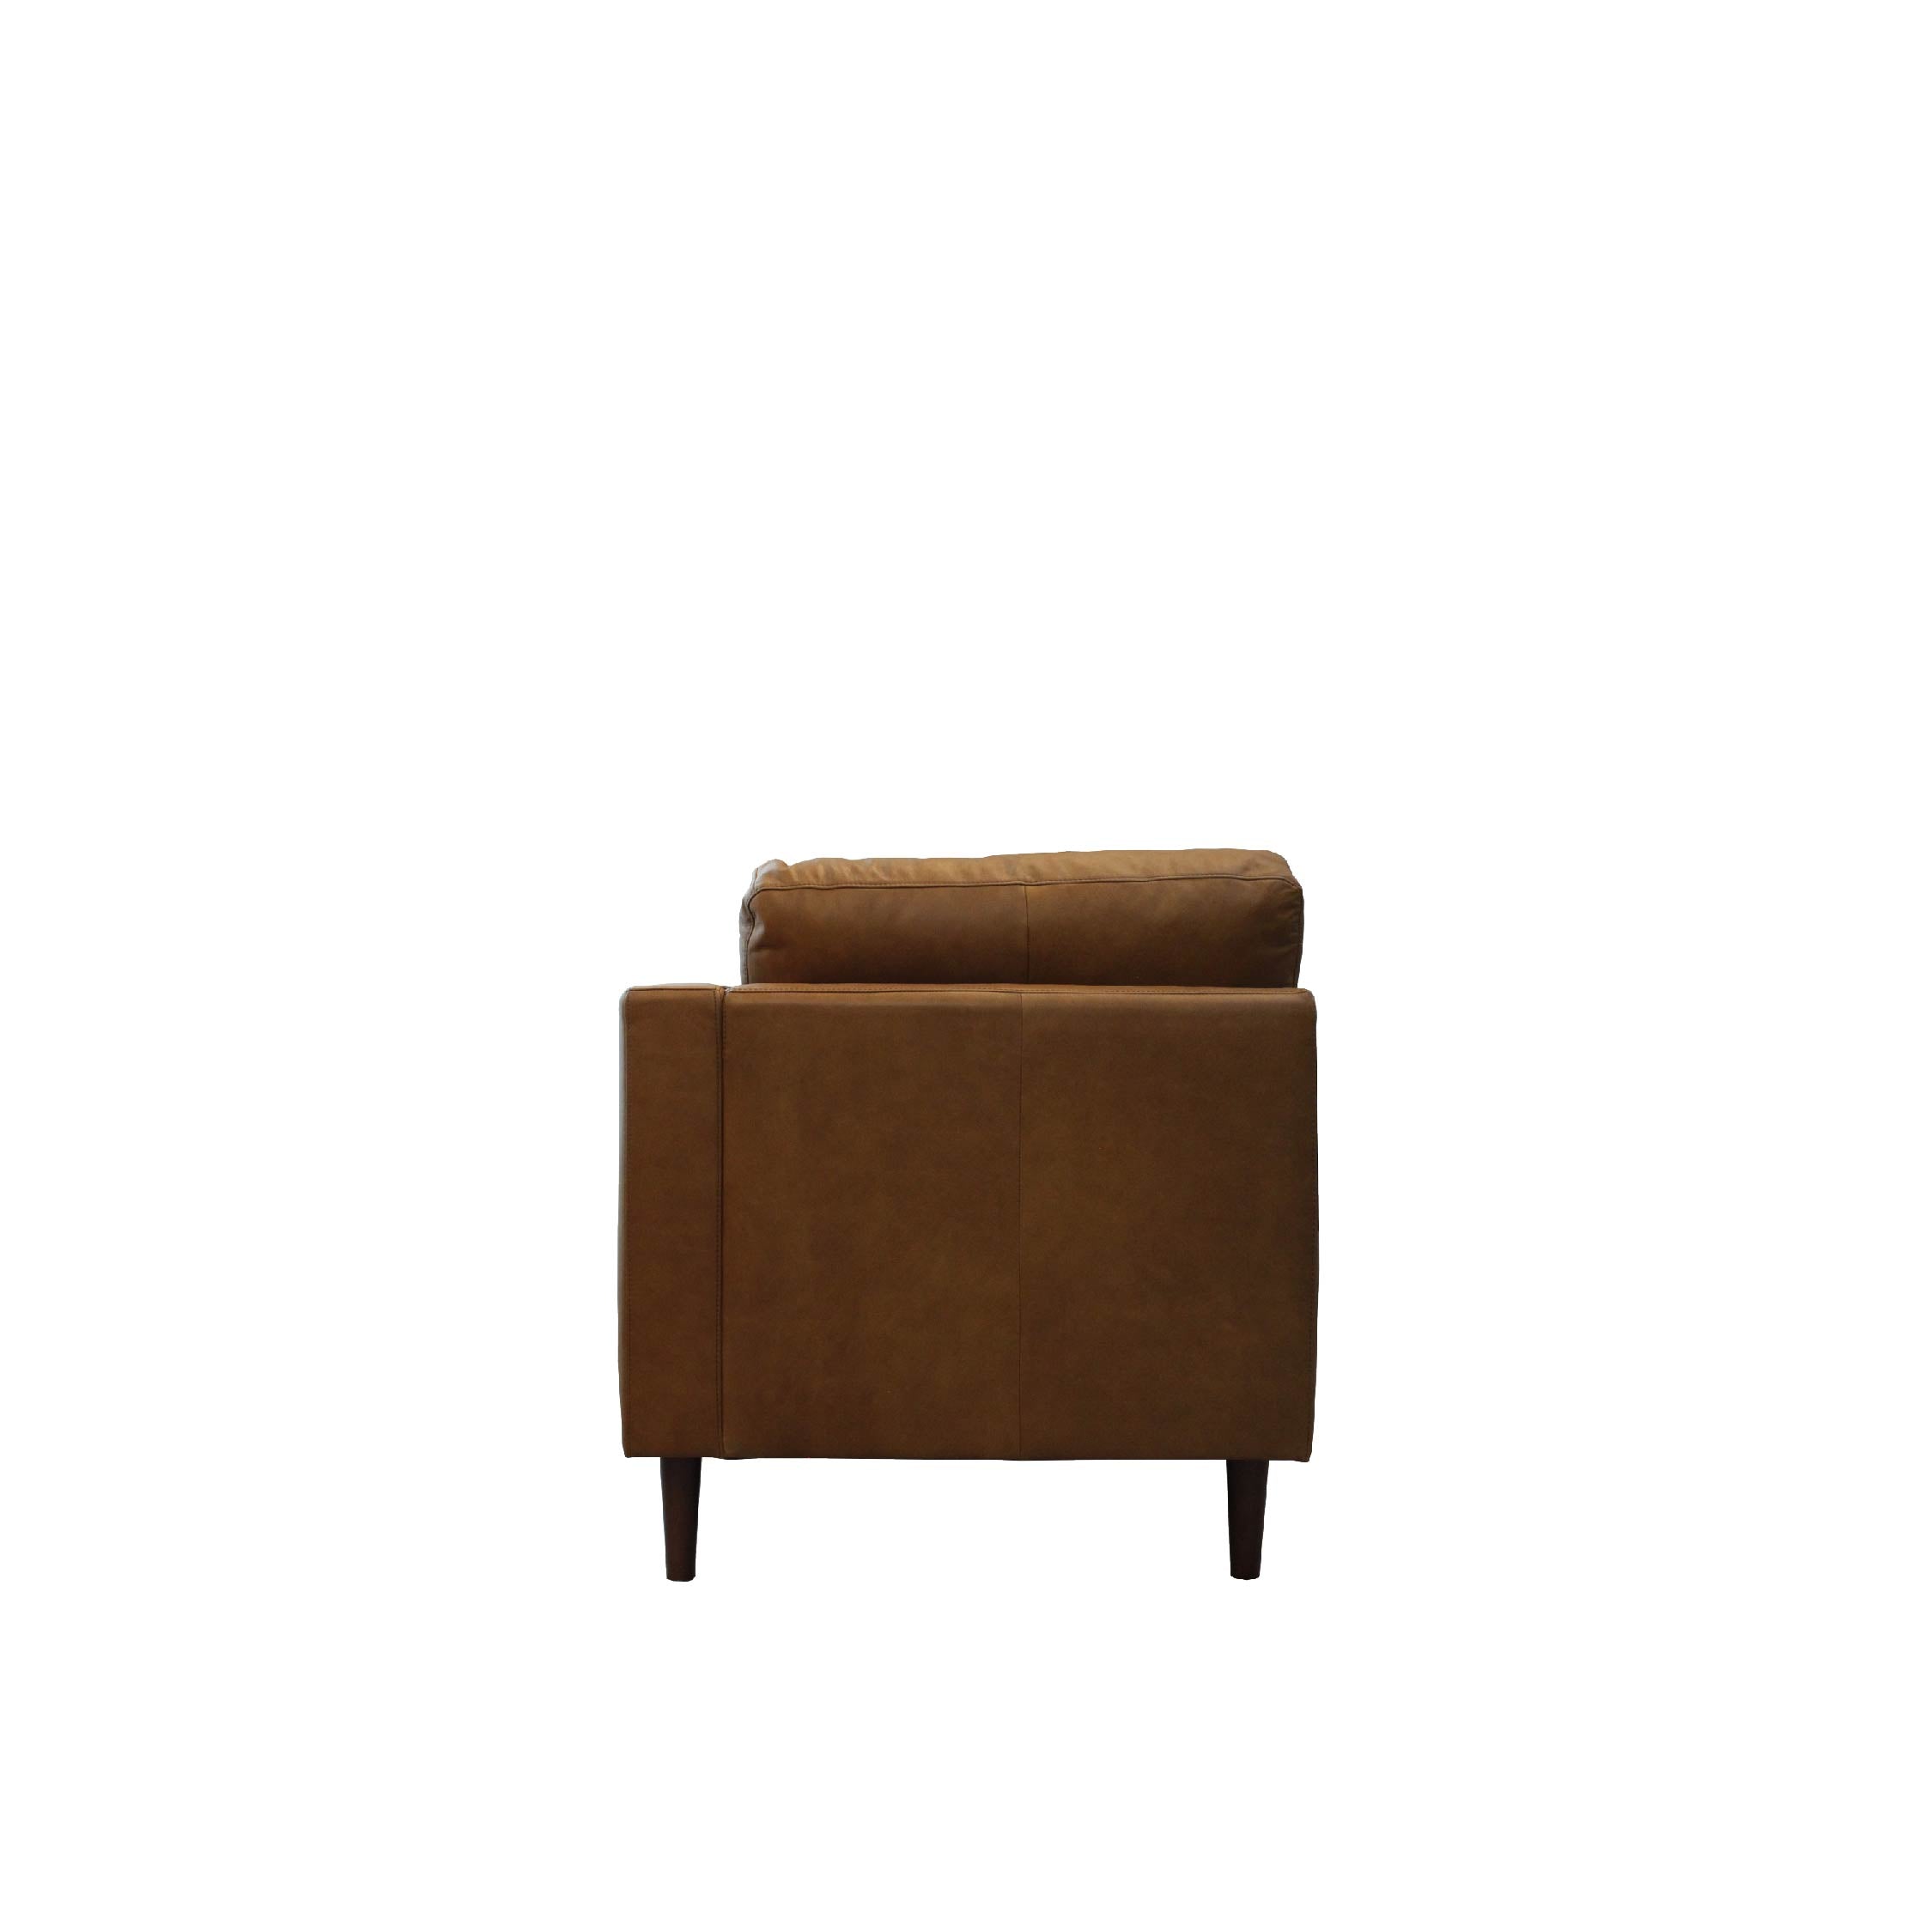 NORDI Sofa Chaise Fabric Premium